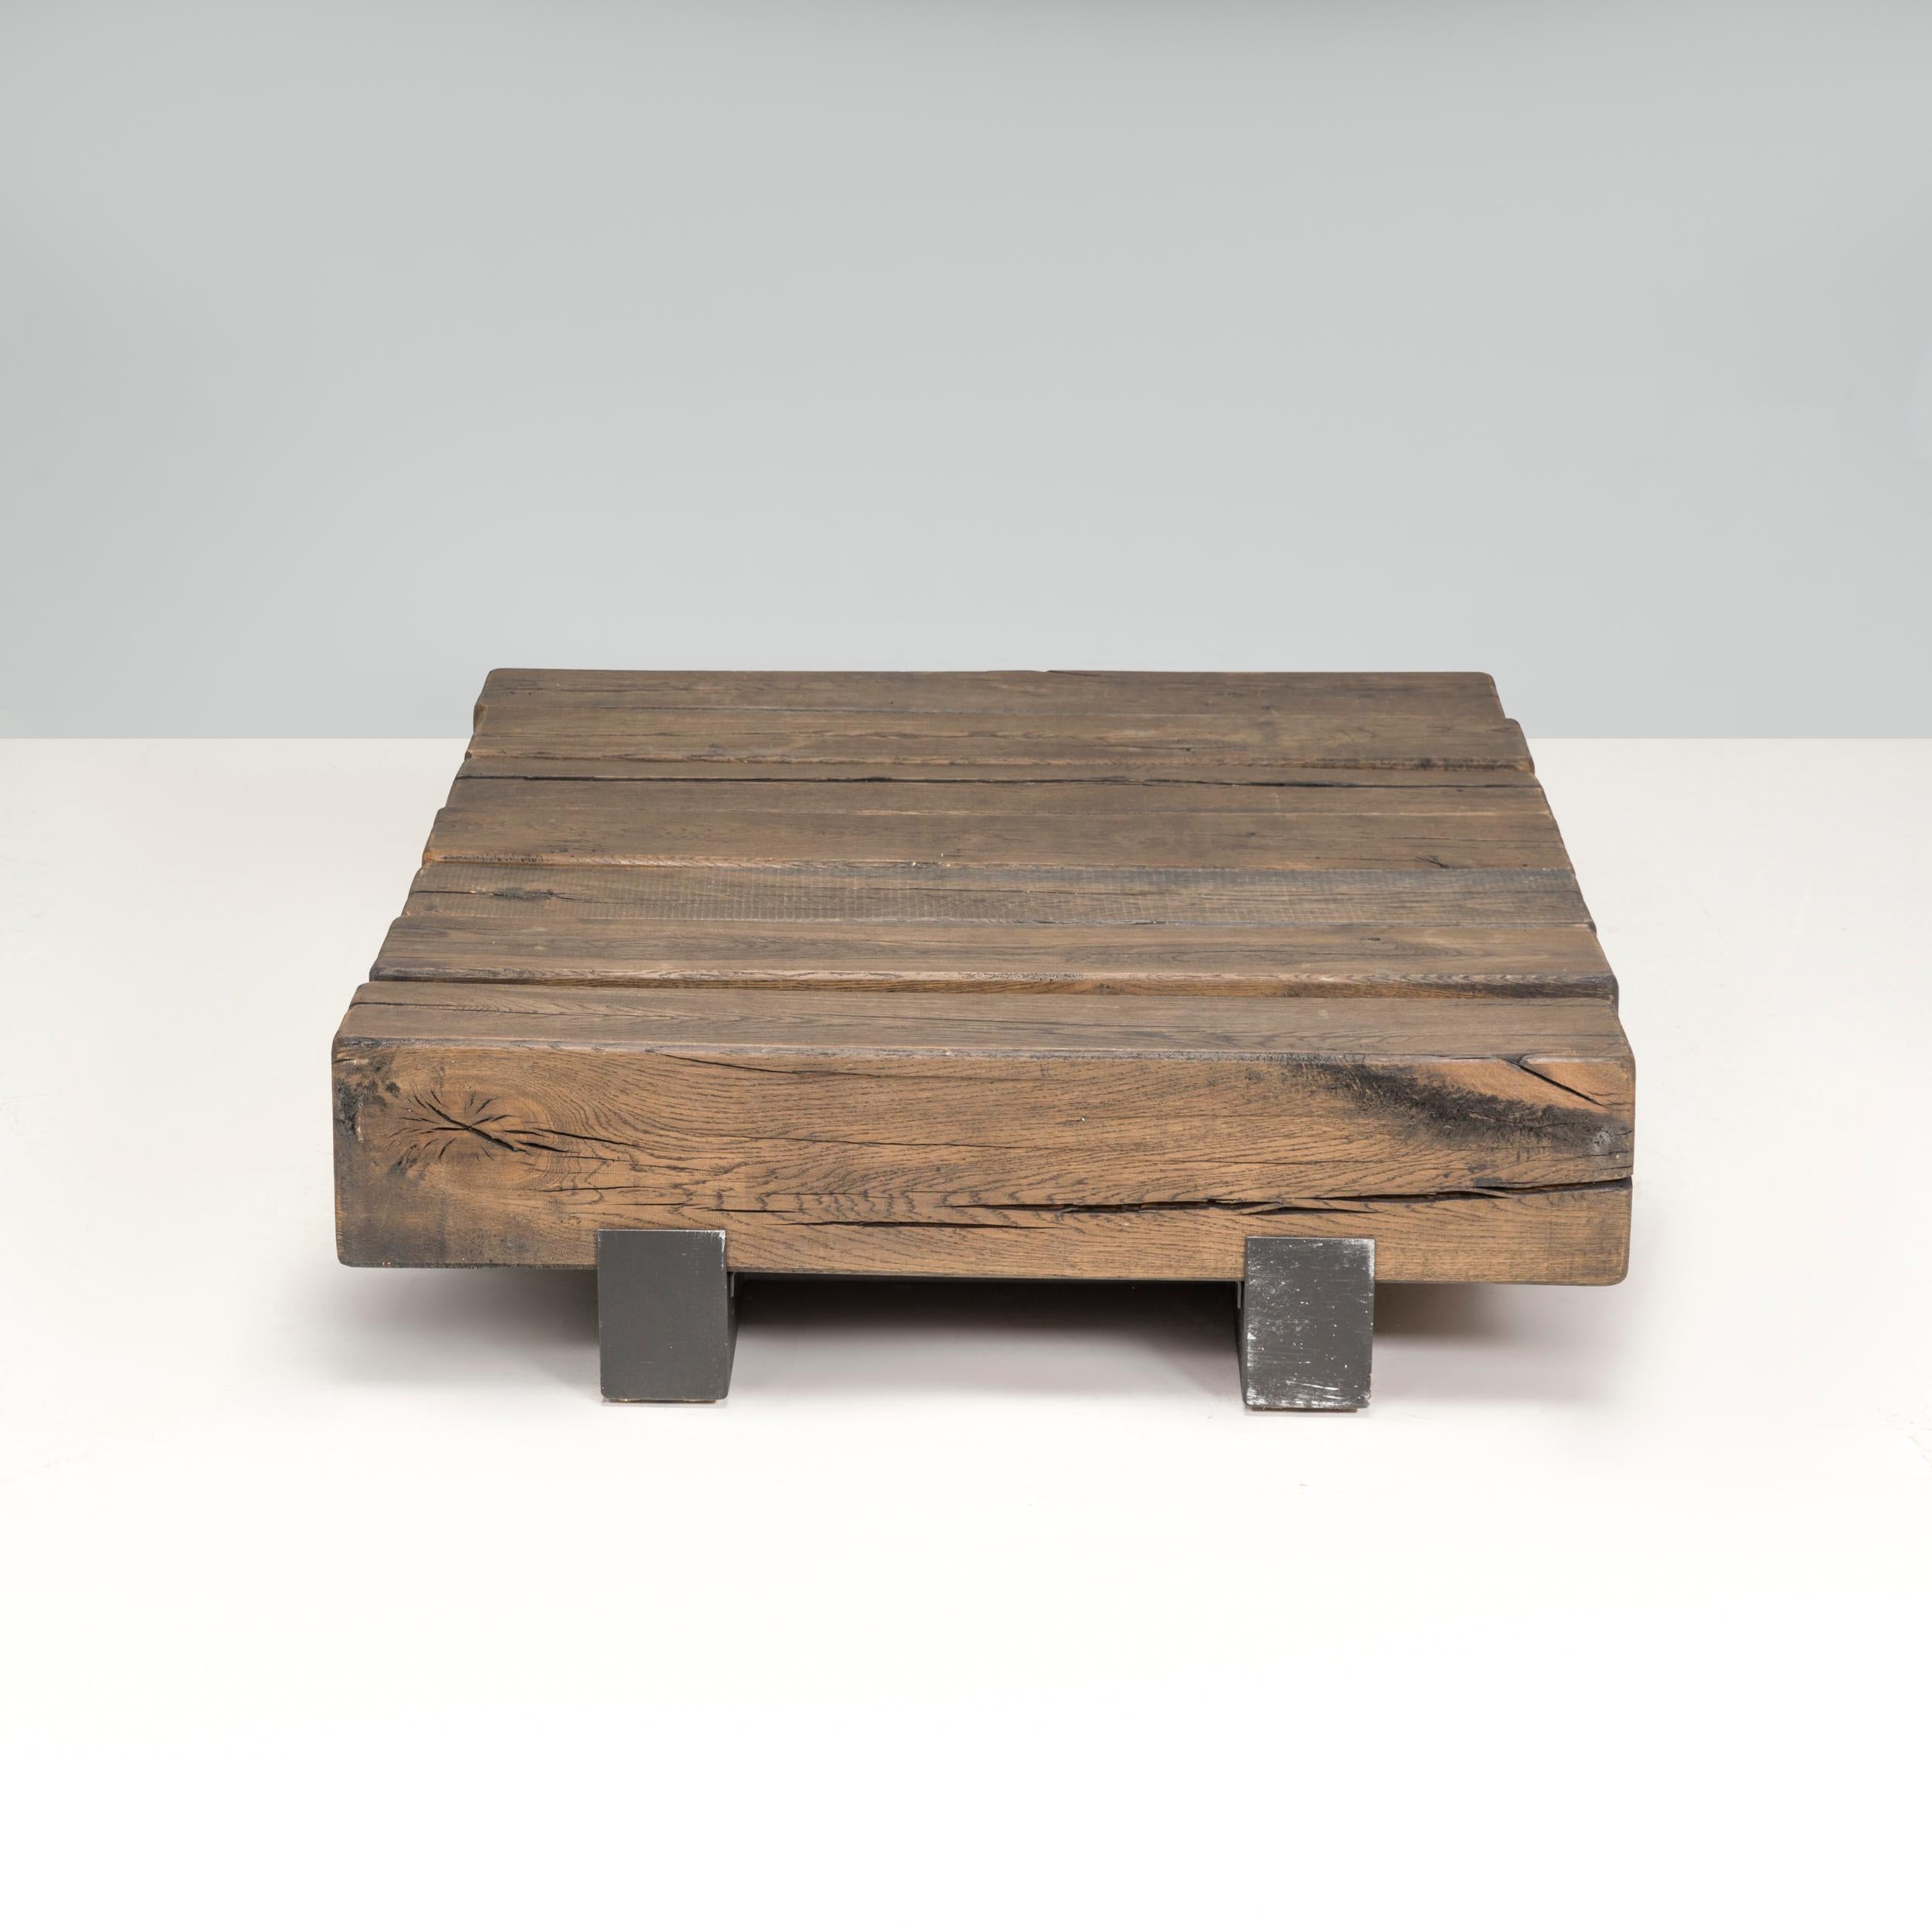 Conçue par Marlieke van Rossum, cette table basse rectangulaire Beam est un merveilleux exemple industriel de la maison de design néerlandaise. Le caractère naturel du bois est laissé à découvert, de sorte que tous les nœuds et toutes les fissures